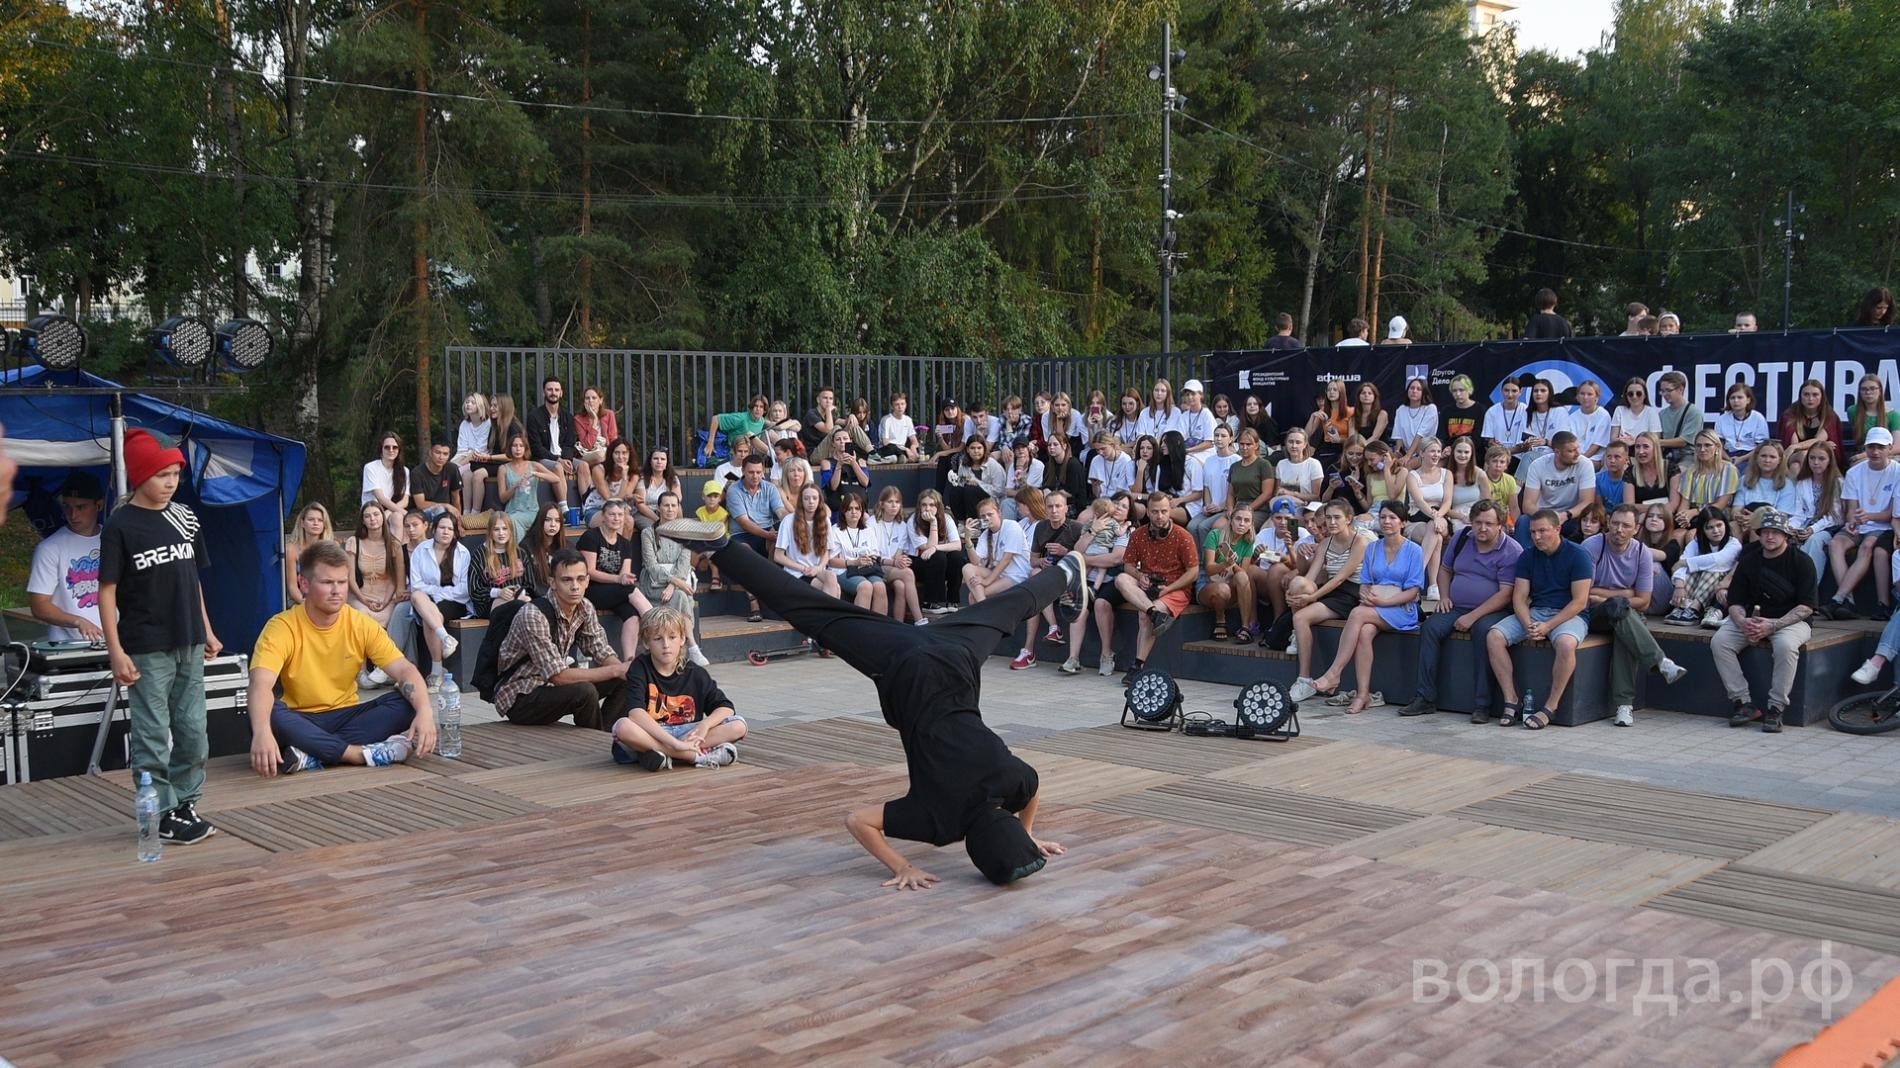 Более 8 тысяч вологжан посетили мероприятия в скейт-парке «Яма» в Вологде